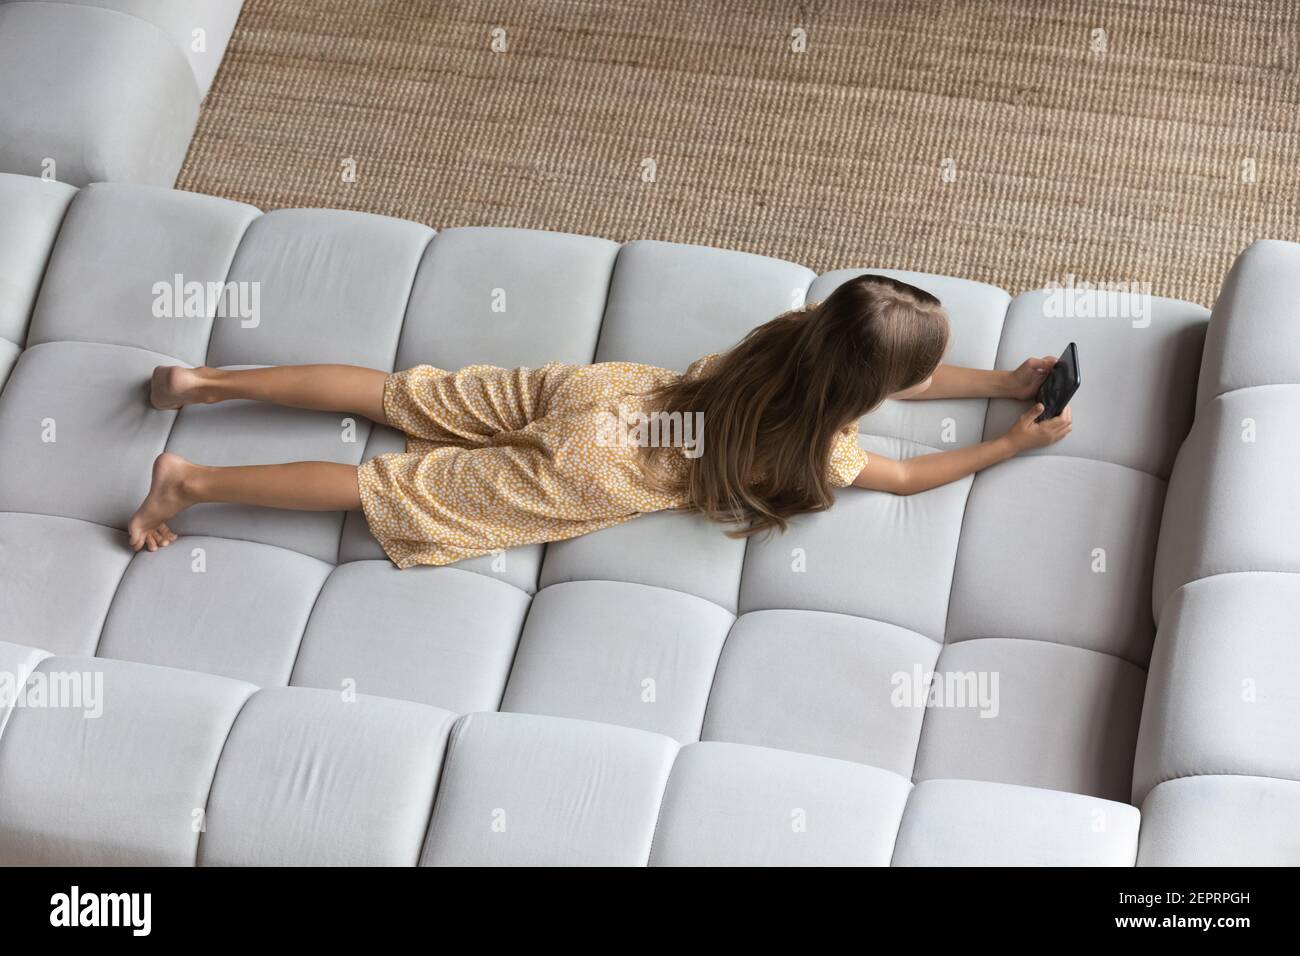 Vista superior de una niña tumbada en el sofá usando la celda Foto de stock